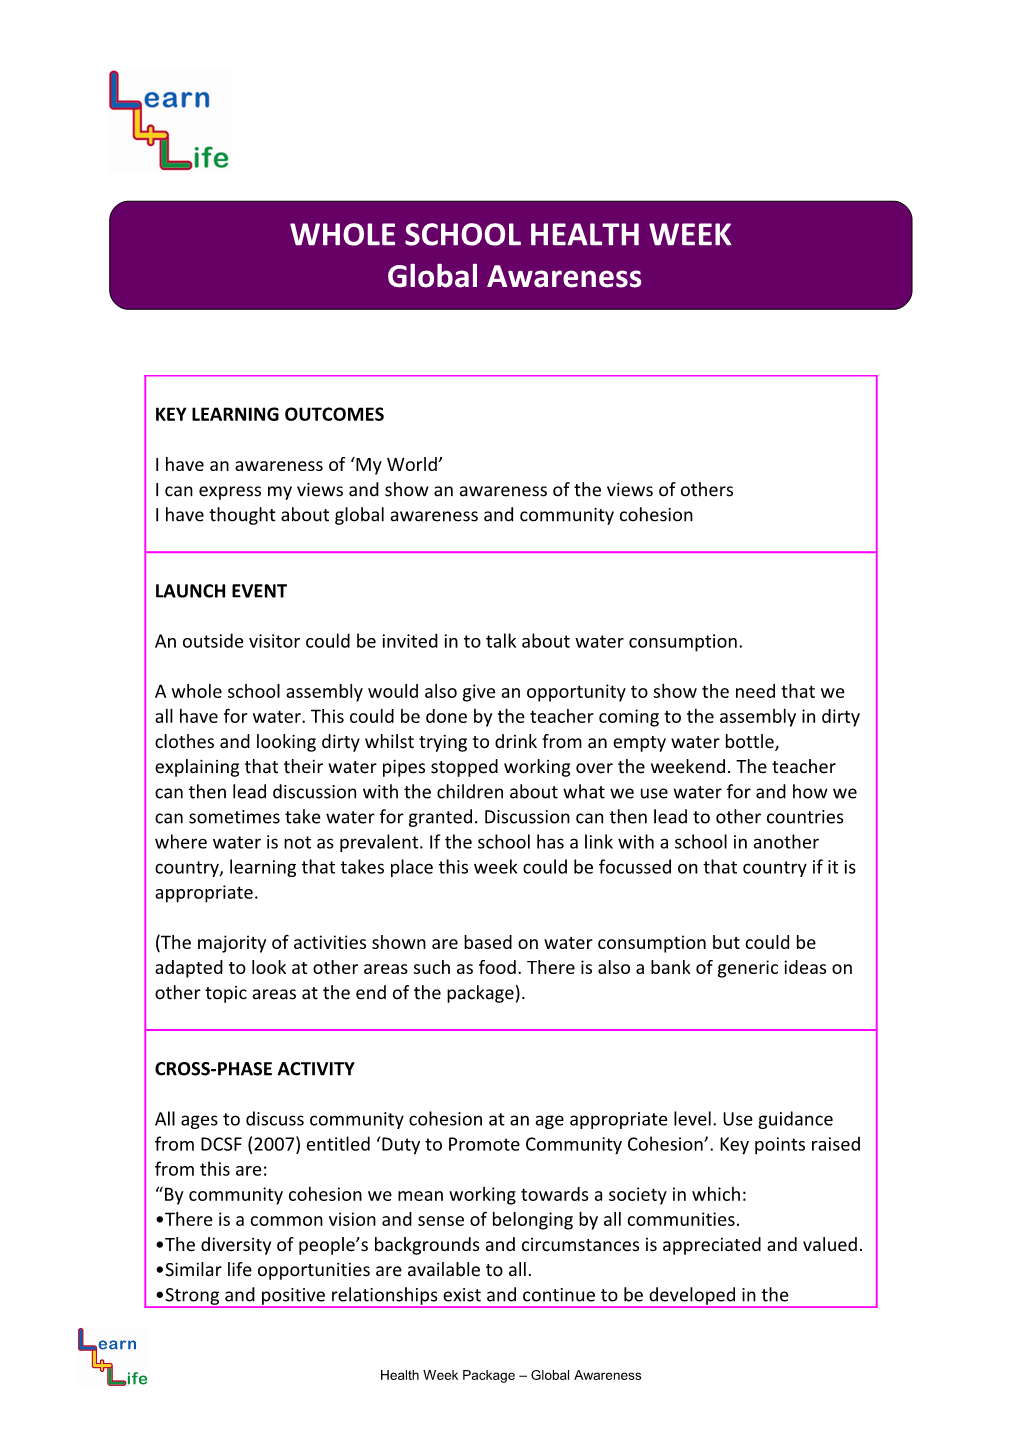 Health Week Package Global Awareness